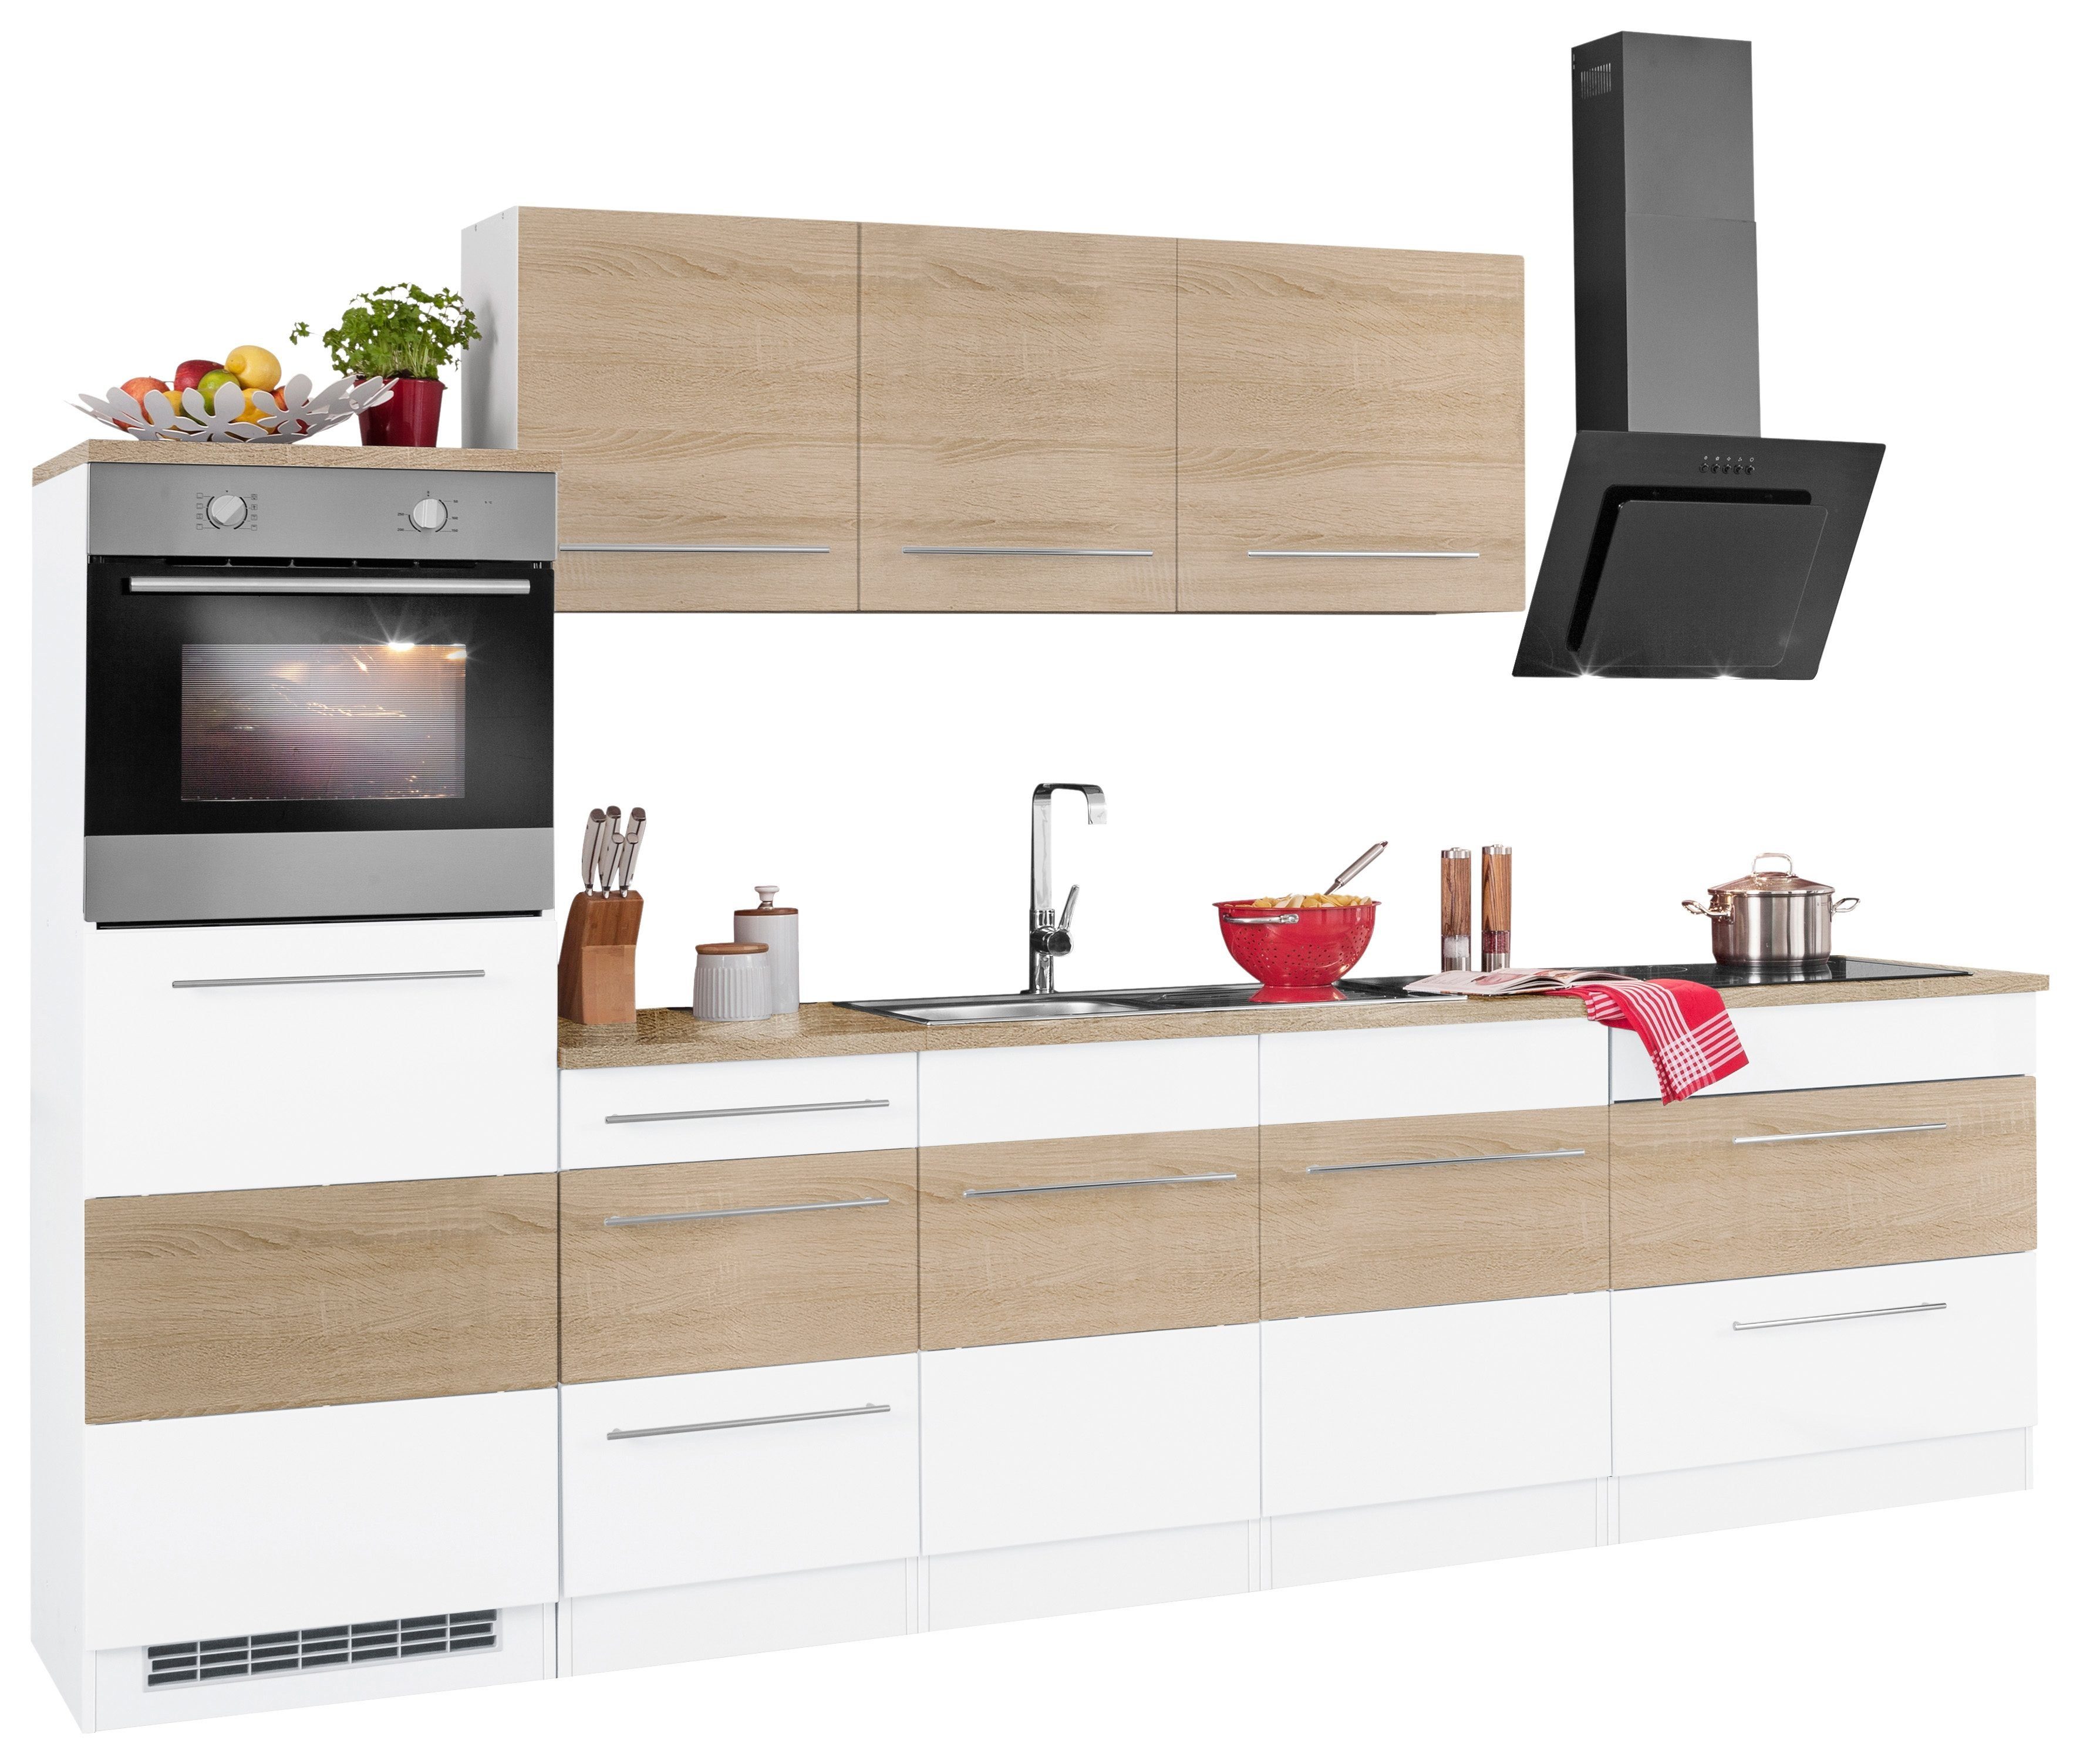 HELD MÖBEL Küchenzeile Trient, mit E-Geräten, Breite 290 cm, Stangengriffe  aus Metall | Küchenzeilen mit Geräten